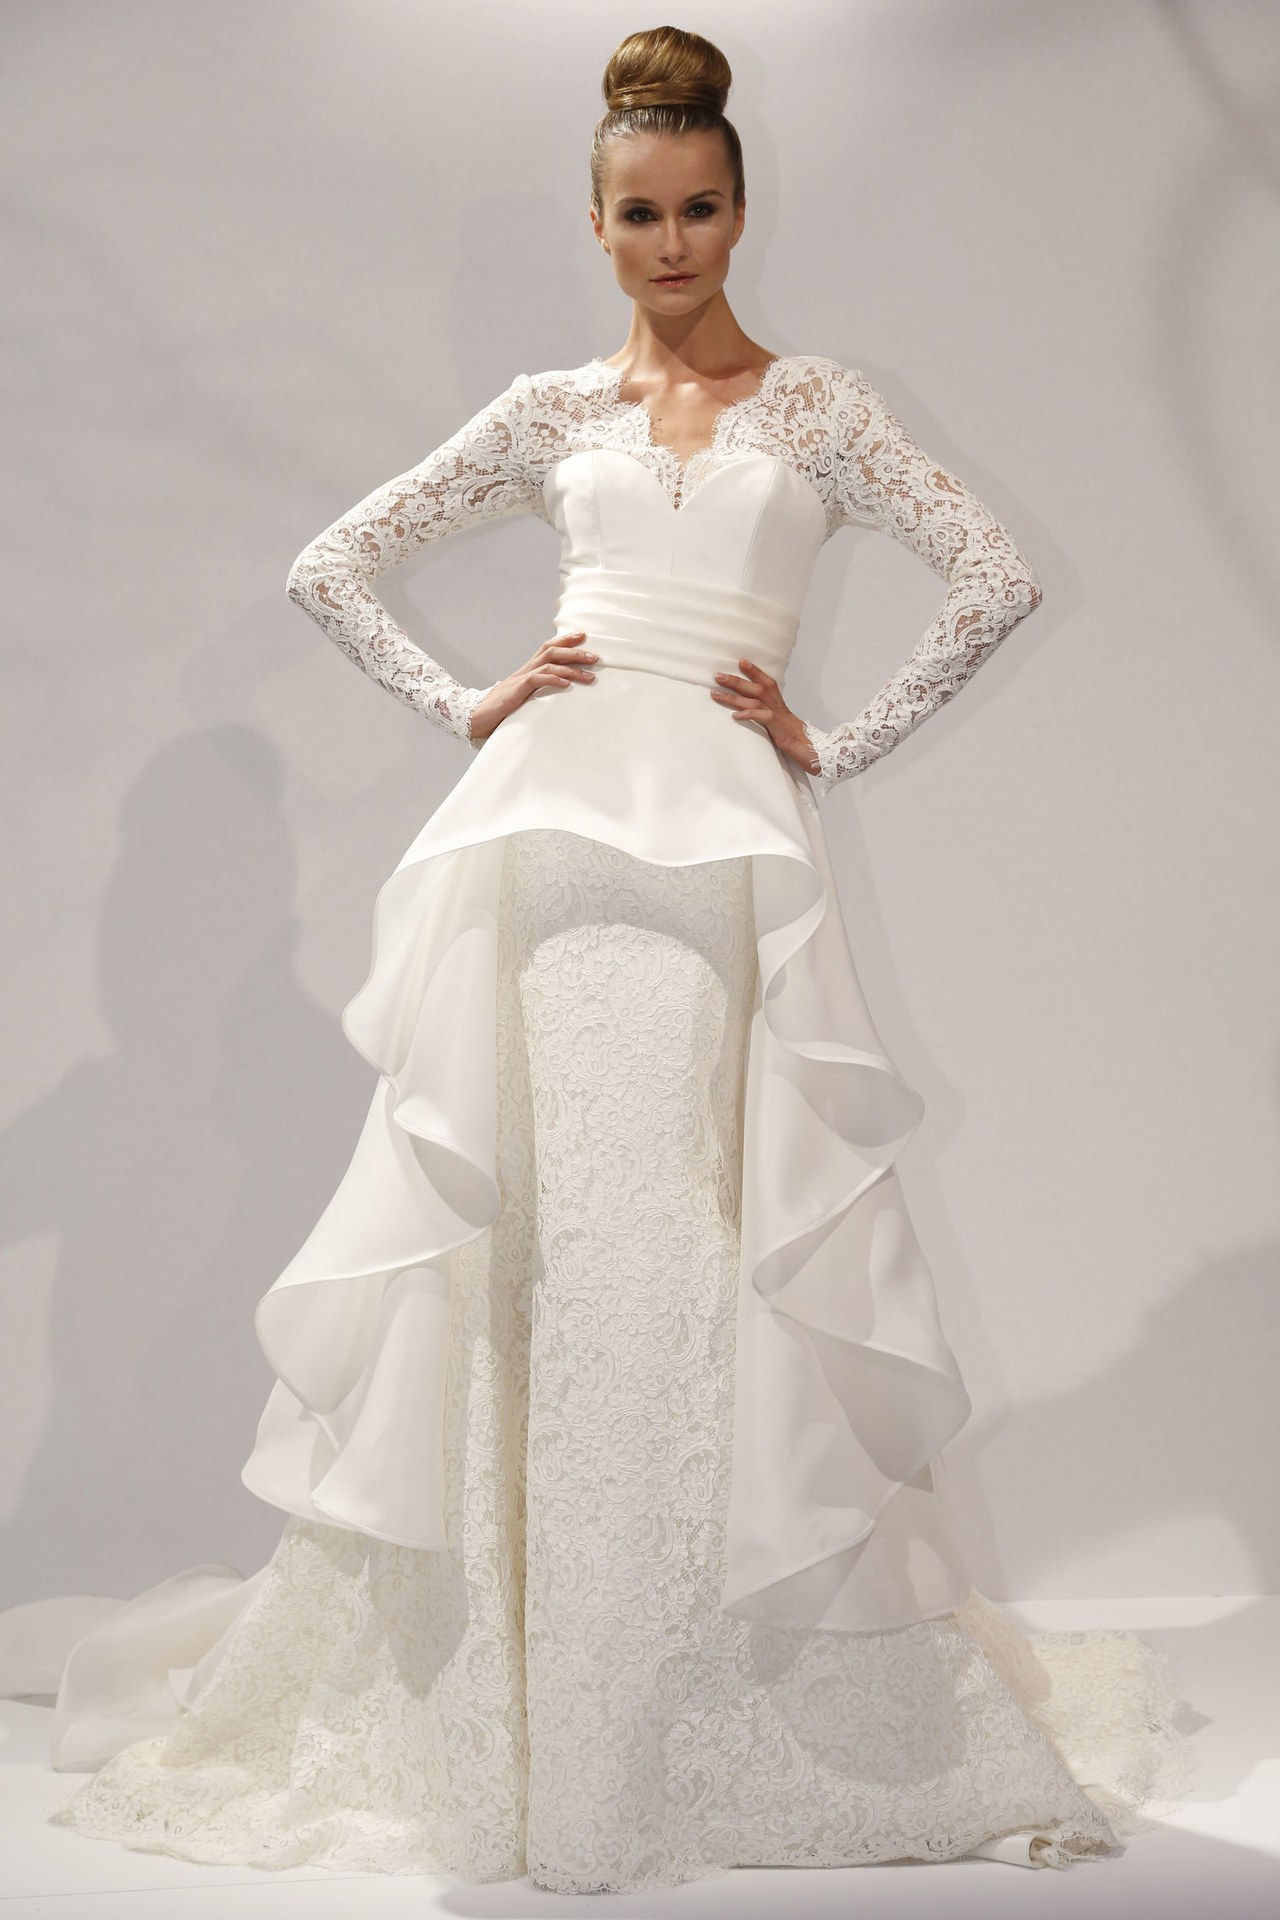 2 elizabeth taylor first wedding dresses inspired by wedding gowns conrad hilton celebrity weddings 0626